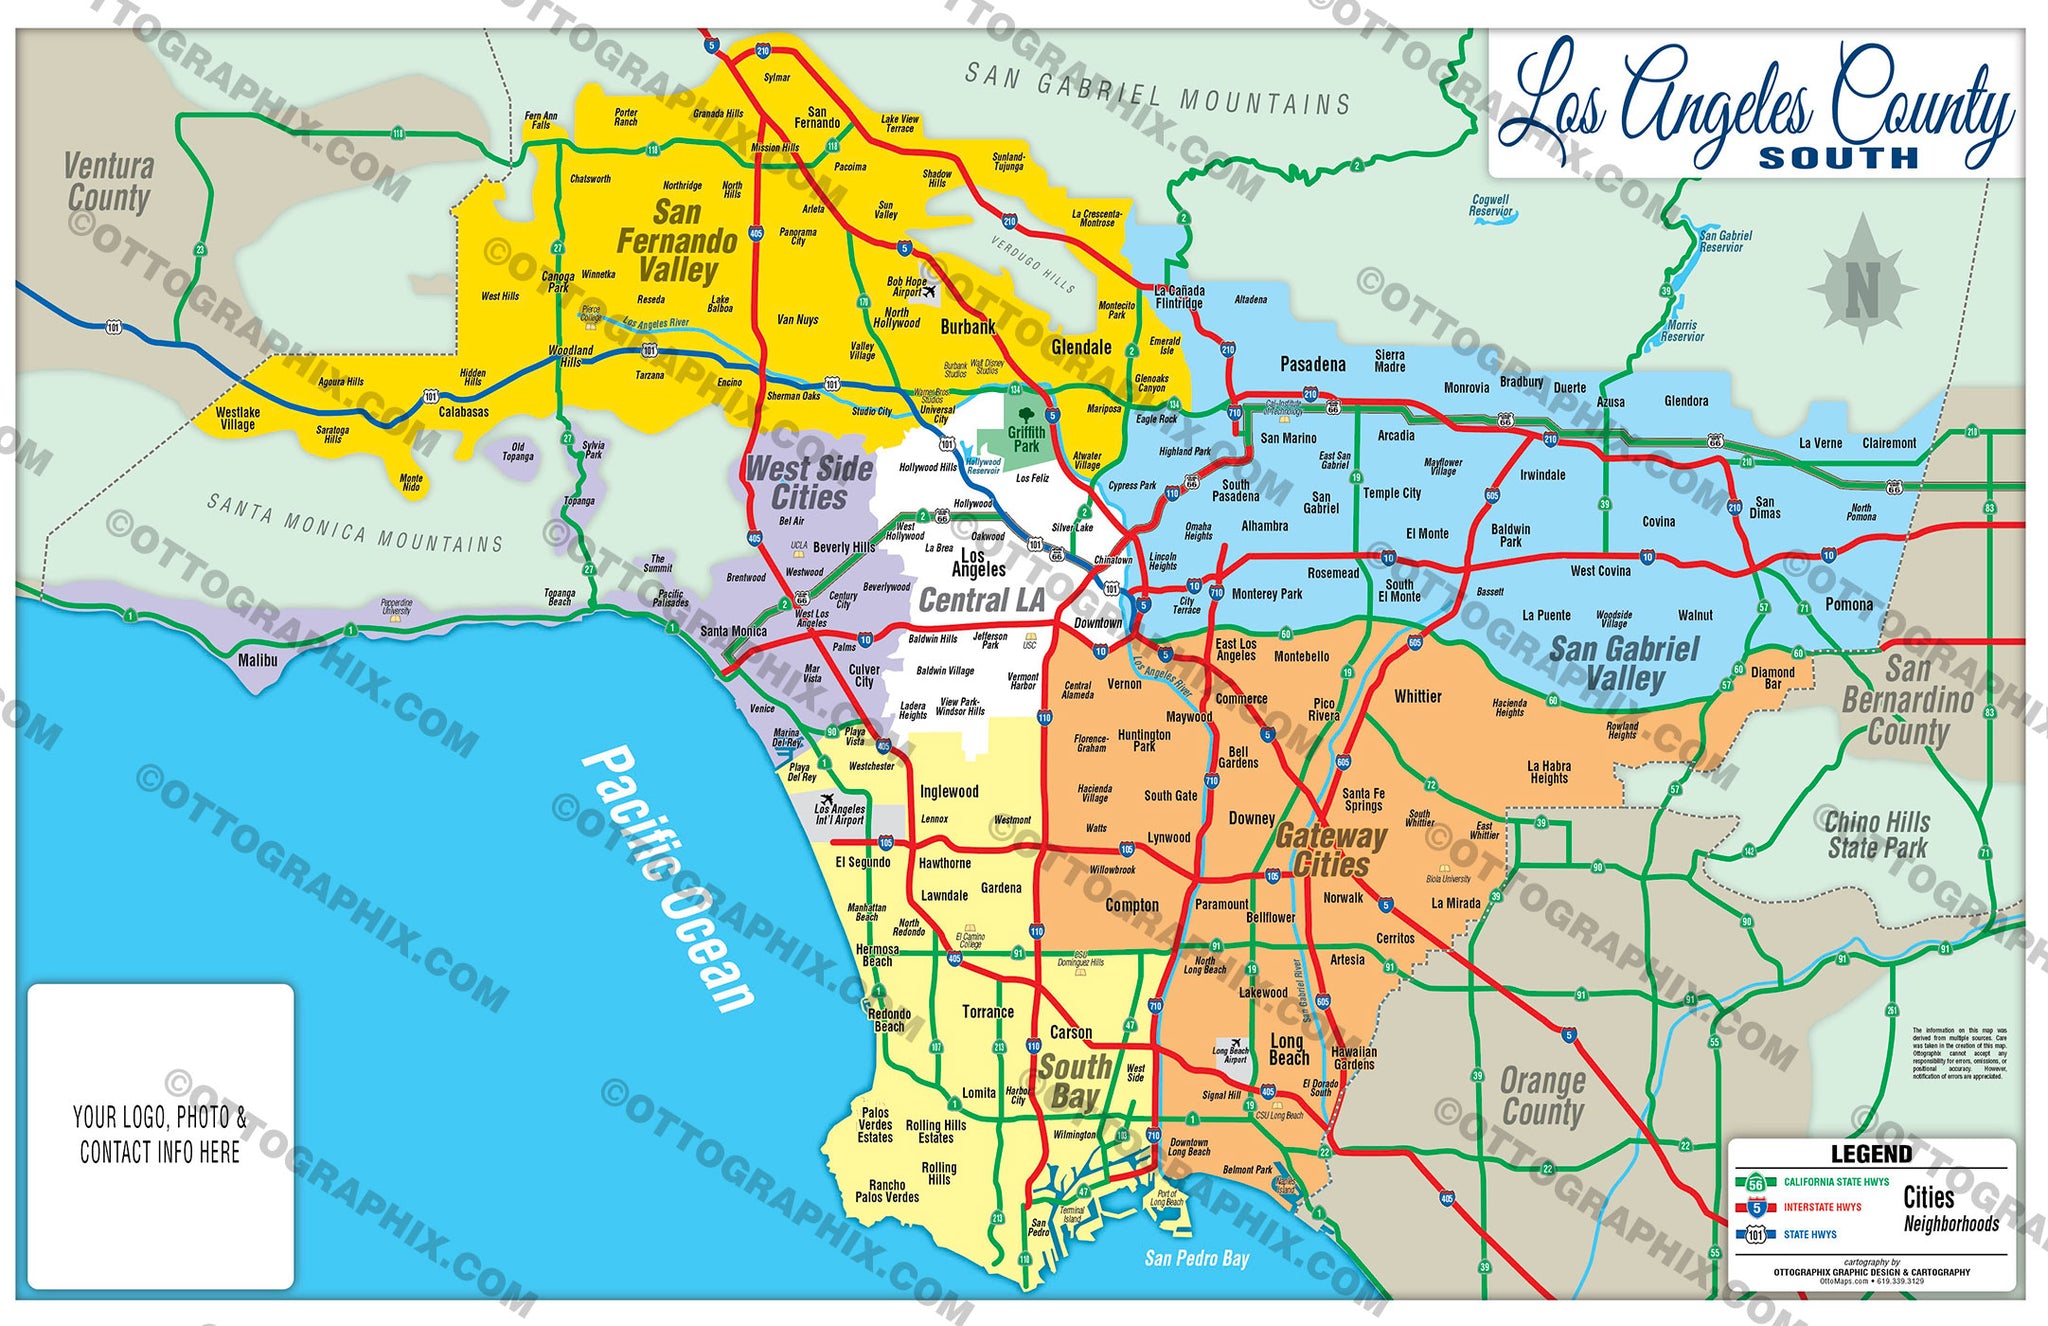 los angeles orange county zip code map Los Angeles County Map South No Zip Codes Otto Maps los angeles orange county zip code map